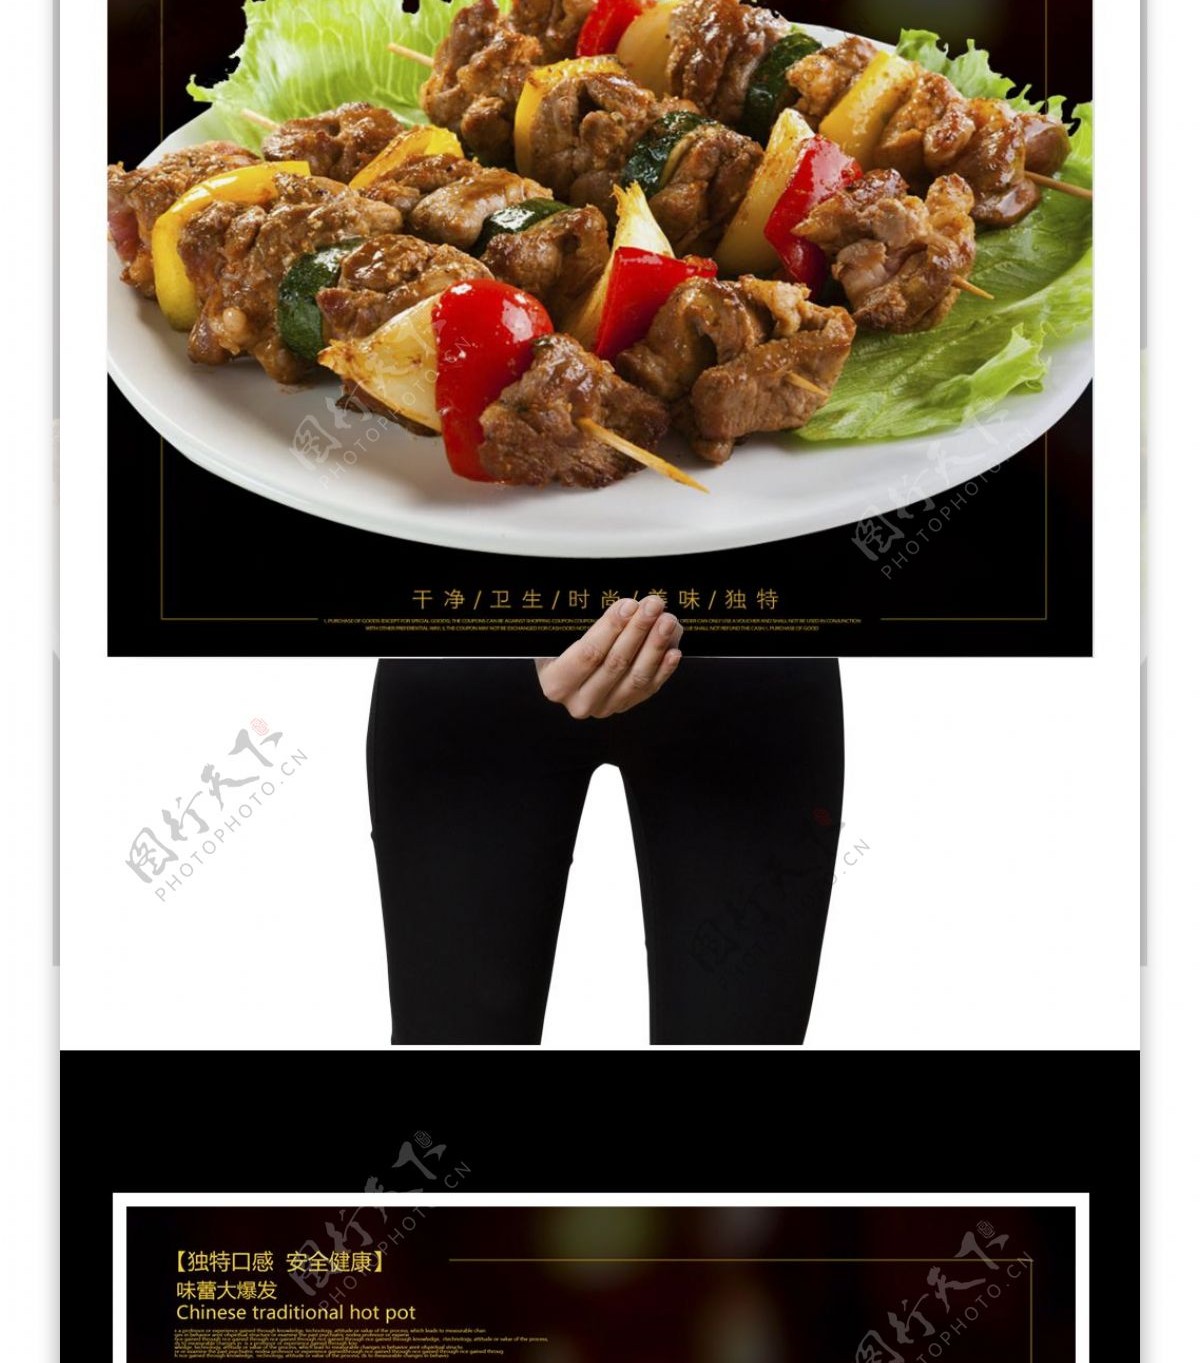 创意美味韩式烤肉宣传海报